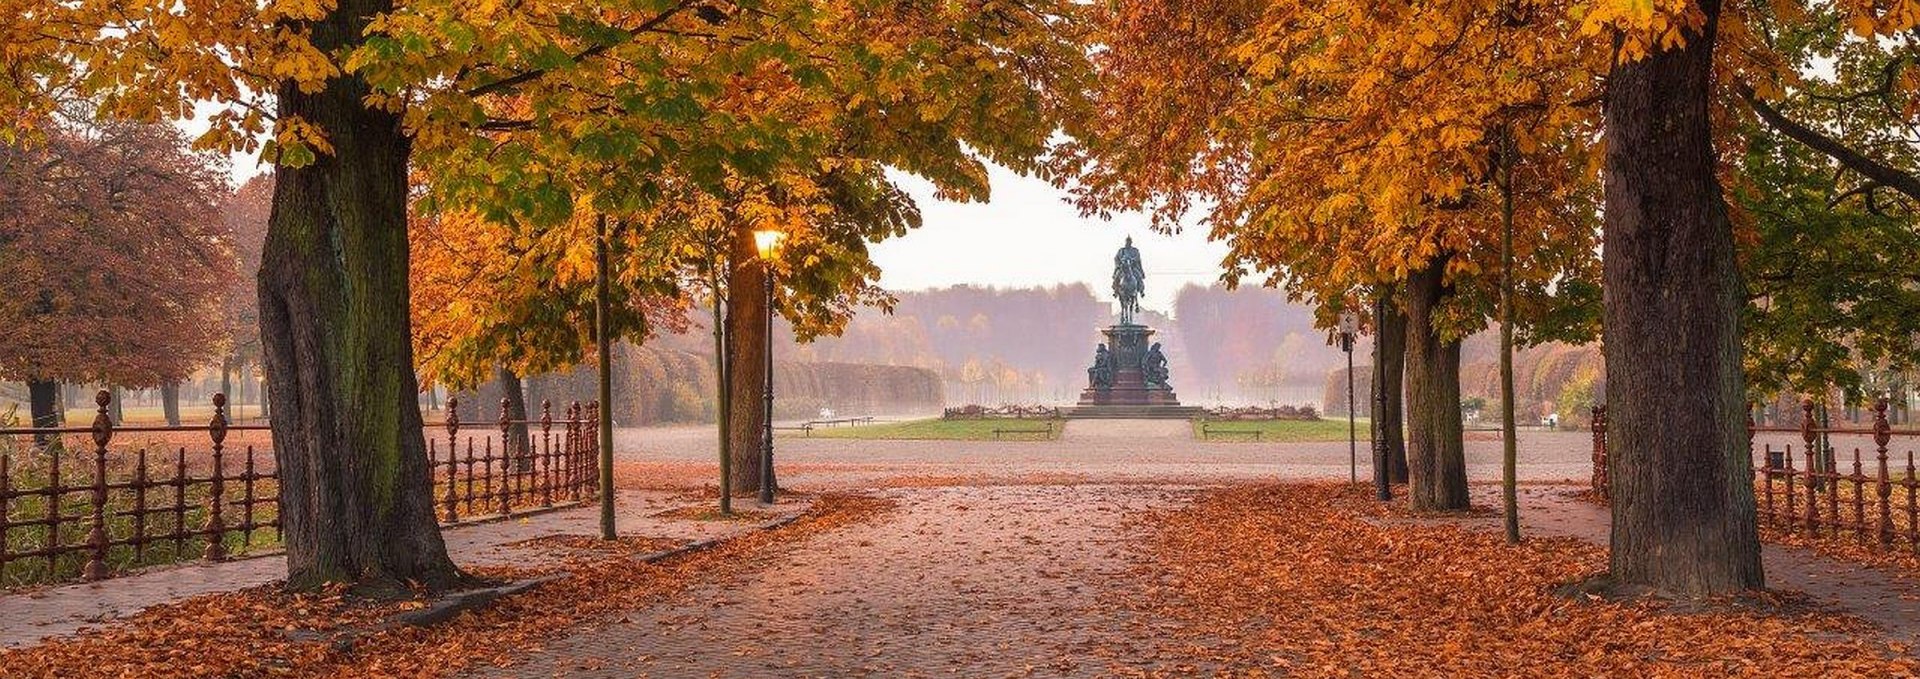 Schwerin Palace Garden in autumn, © SSGK MV / Timm Allrich